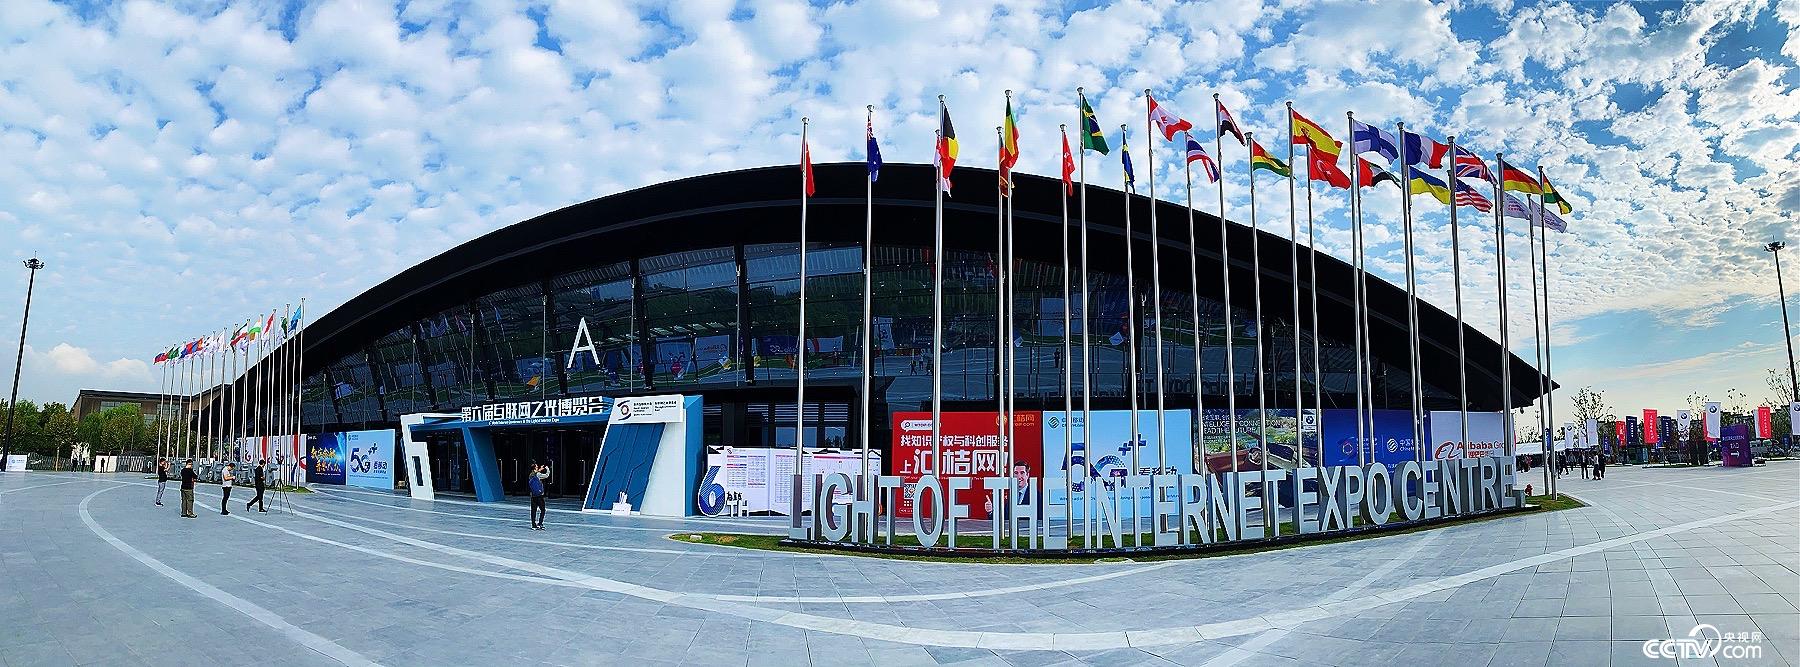 第六届世界互联网大会“互联网之光”博览会在乌镇开幕